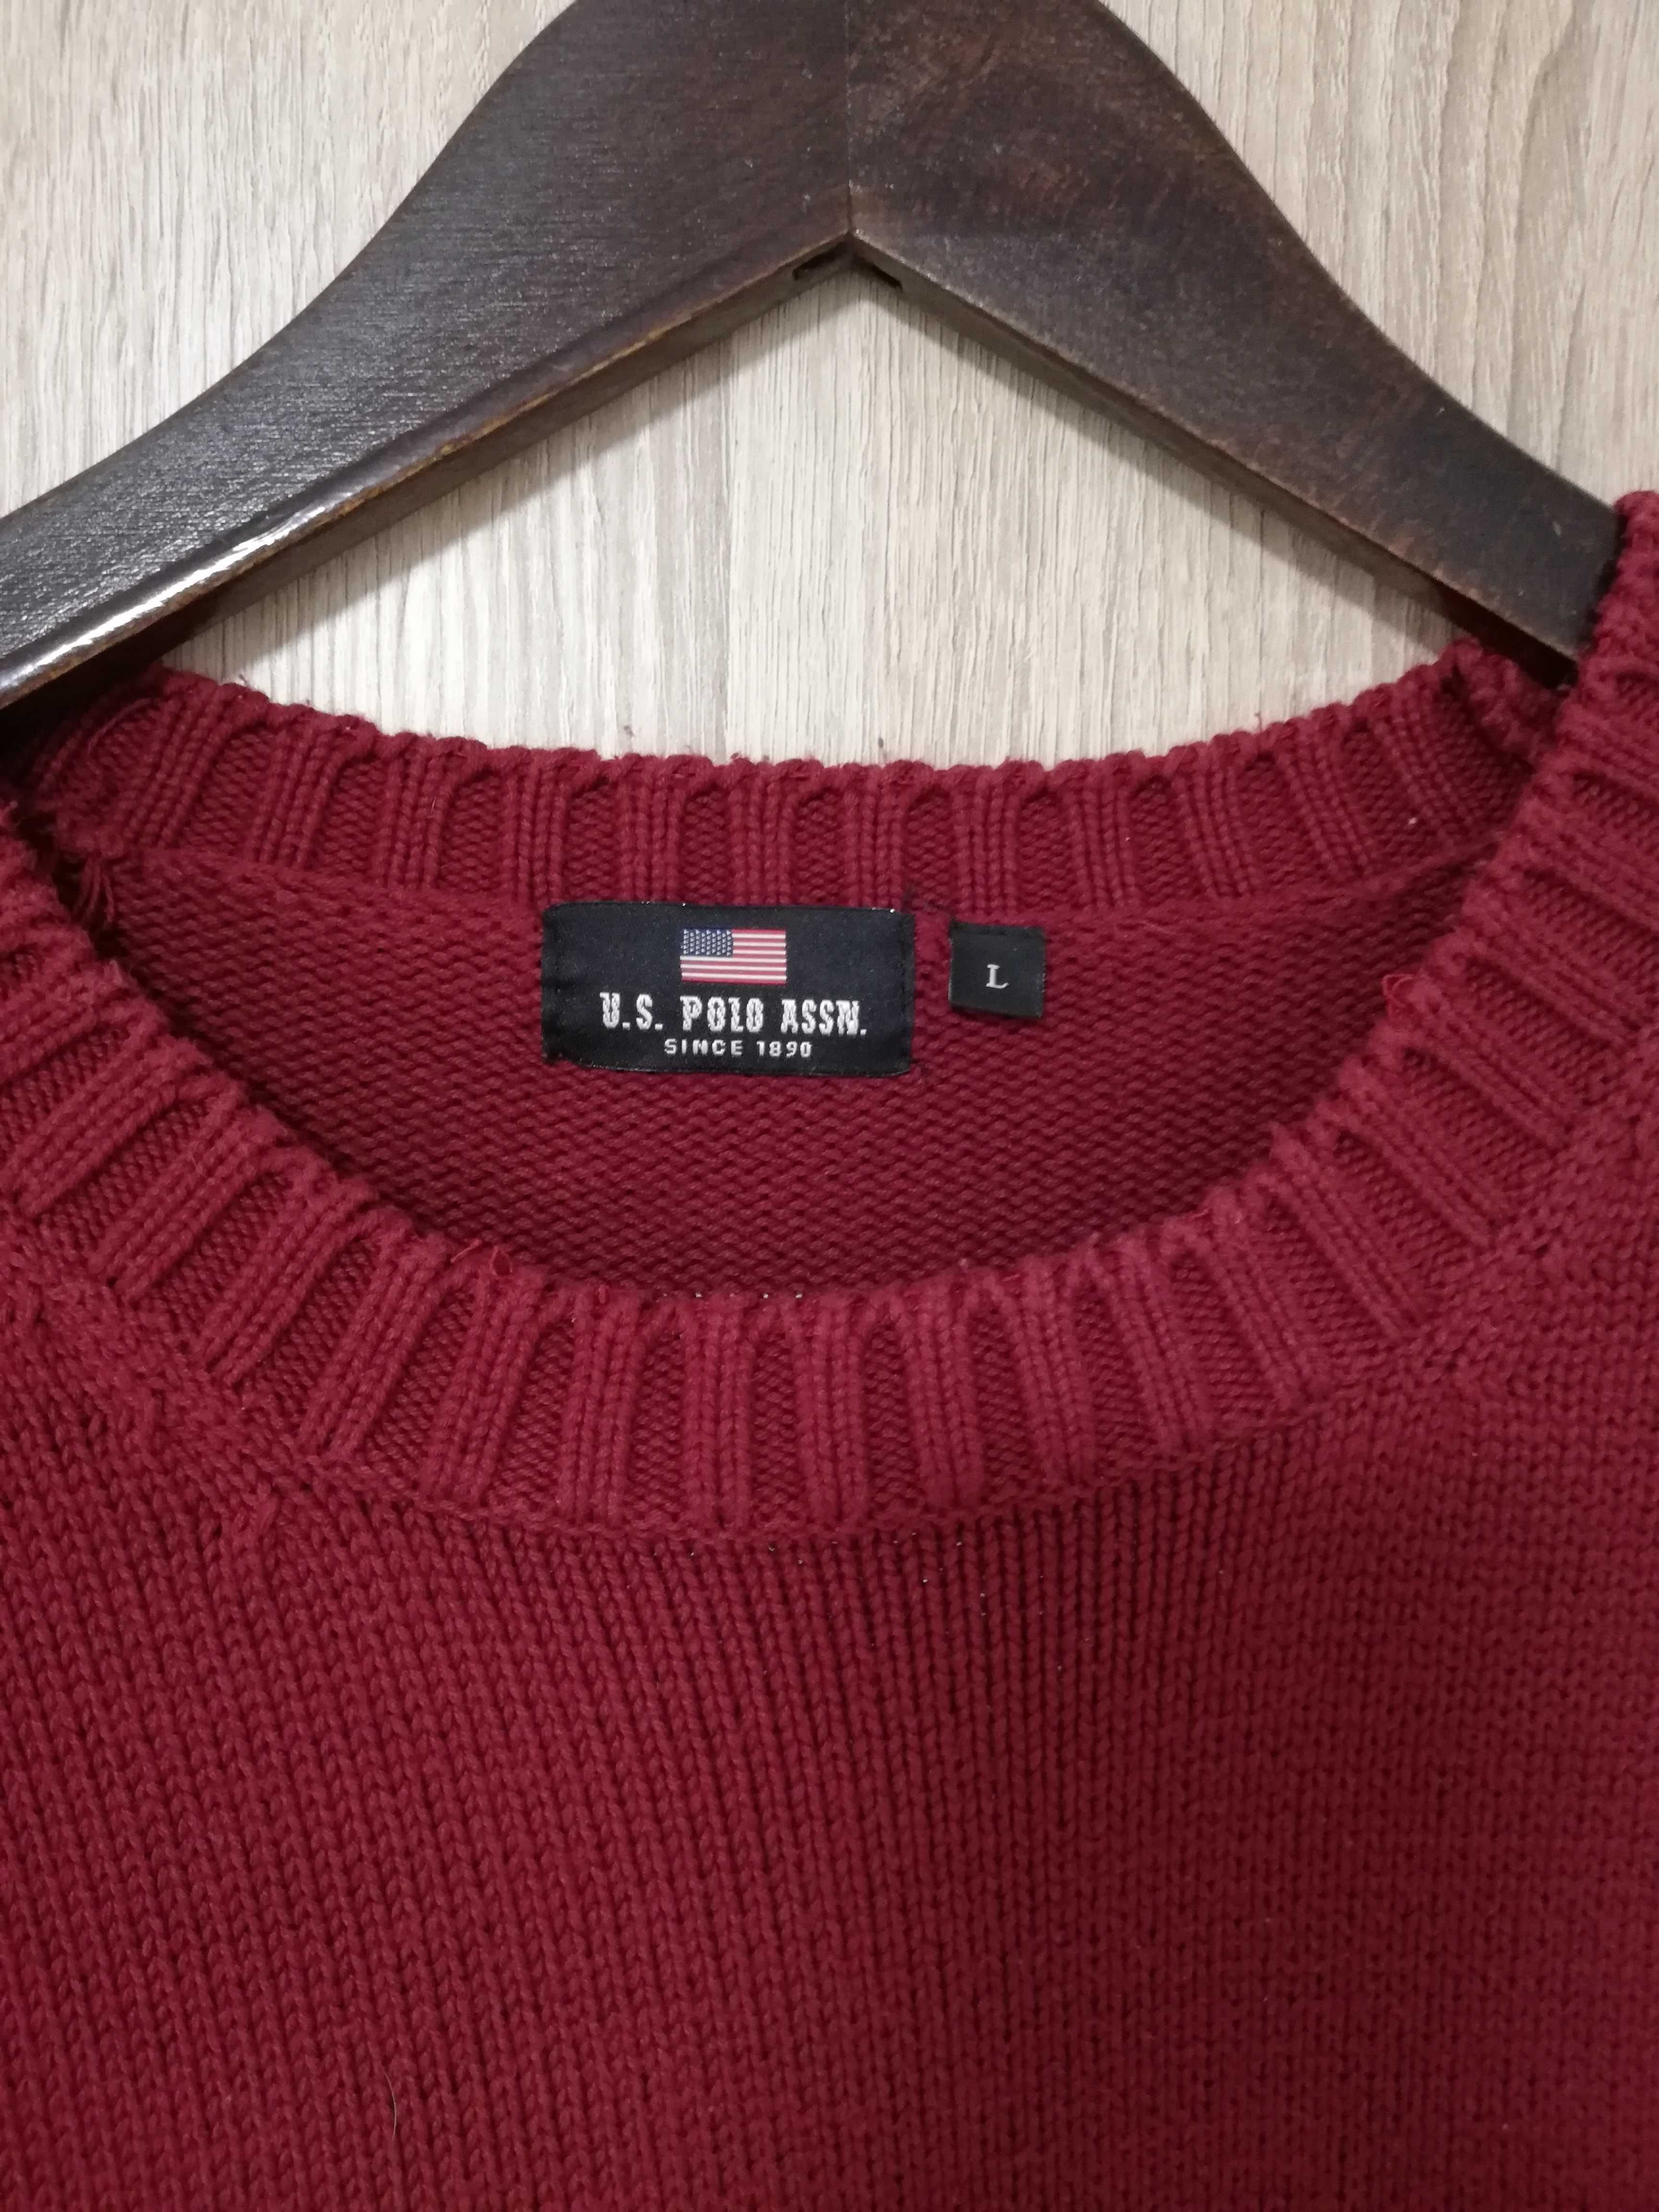 Sweter męski U.S Polo ASSN. 100% bawełna rozmiar L